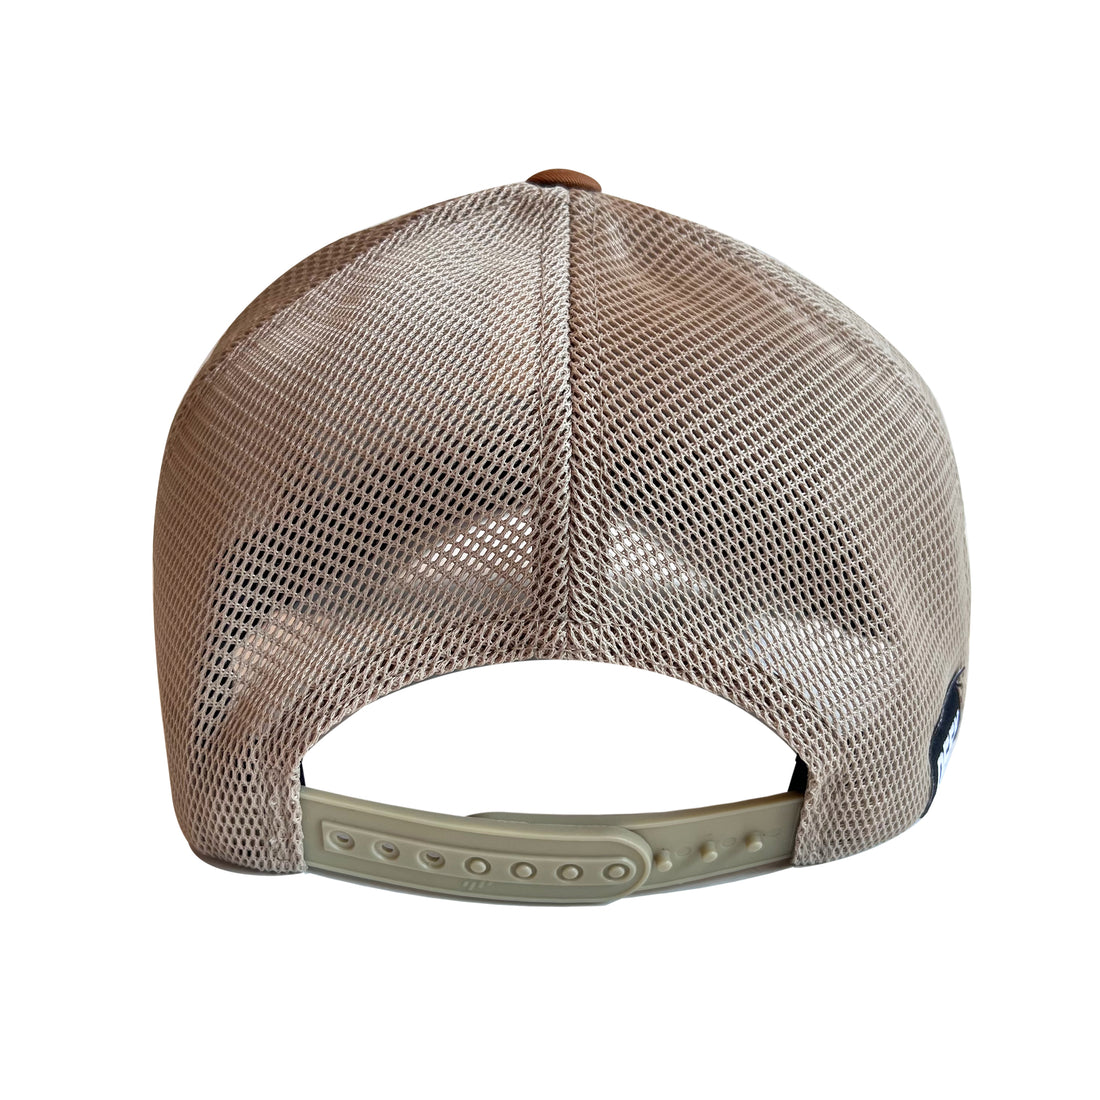 DEFY Trucker Hat | Velcro